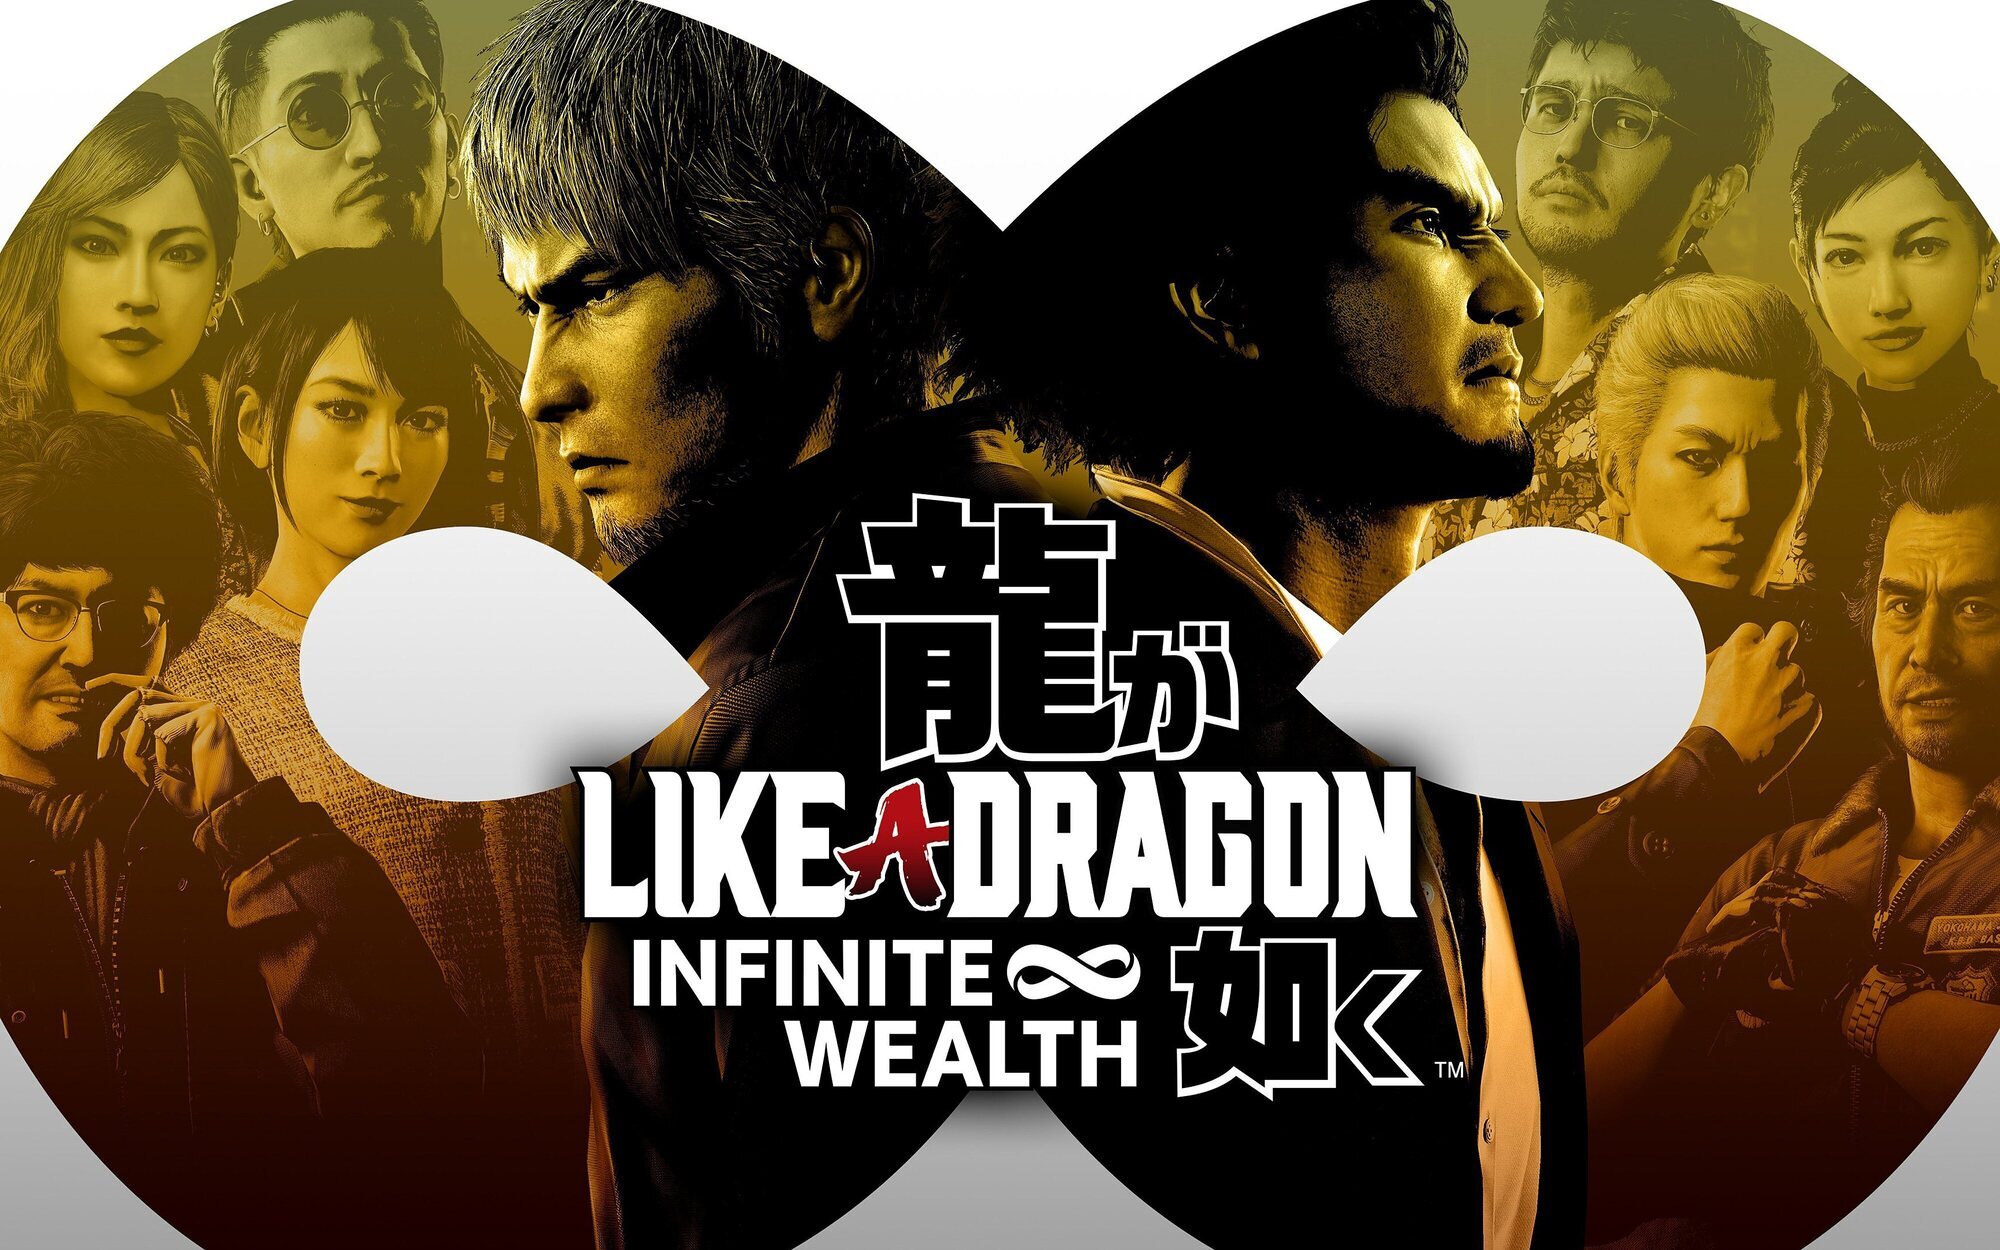 Análisis de 'Like a Dragon: Infinite Wealth', dos hombres con un mismo destino